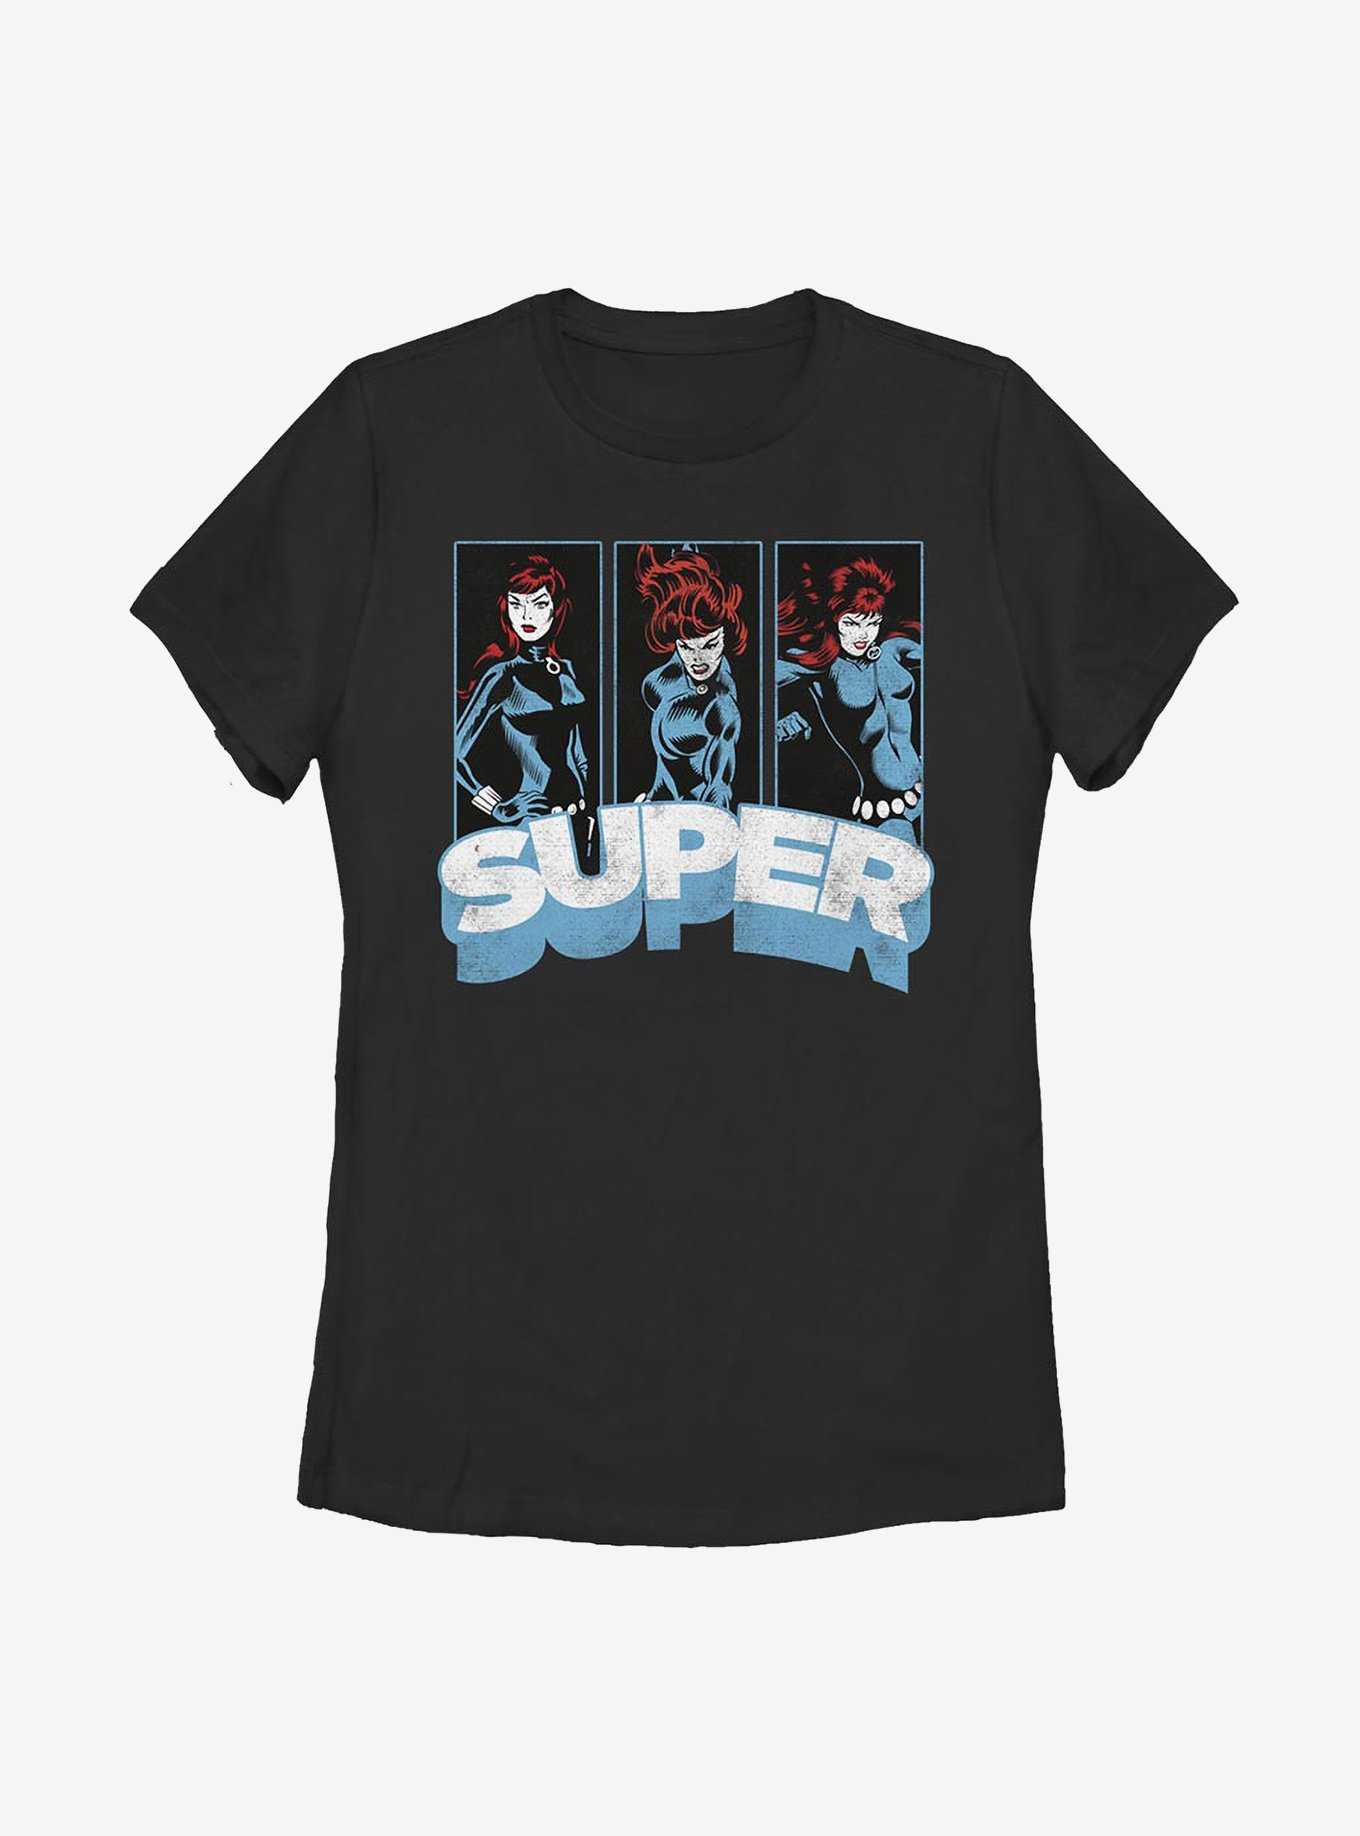 Marvel Black Widow Super Womens T-Shirt, , hi-res